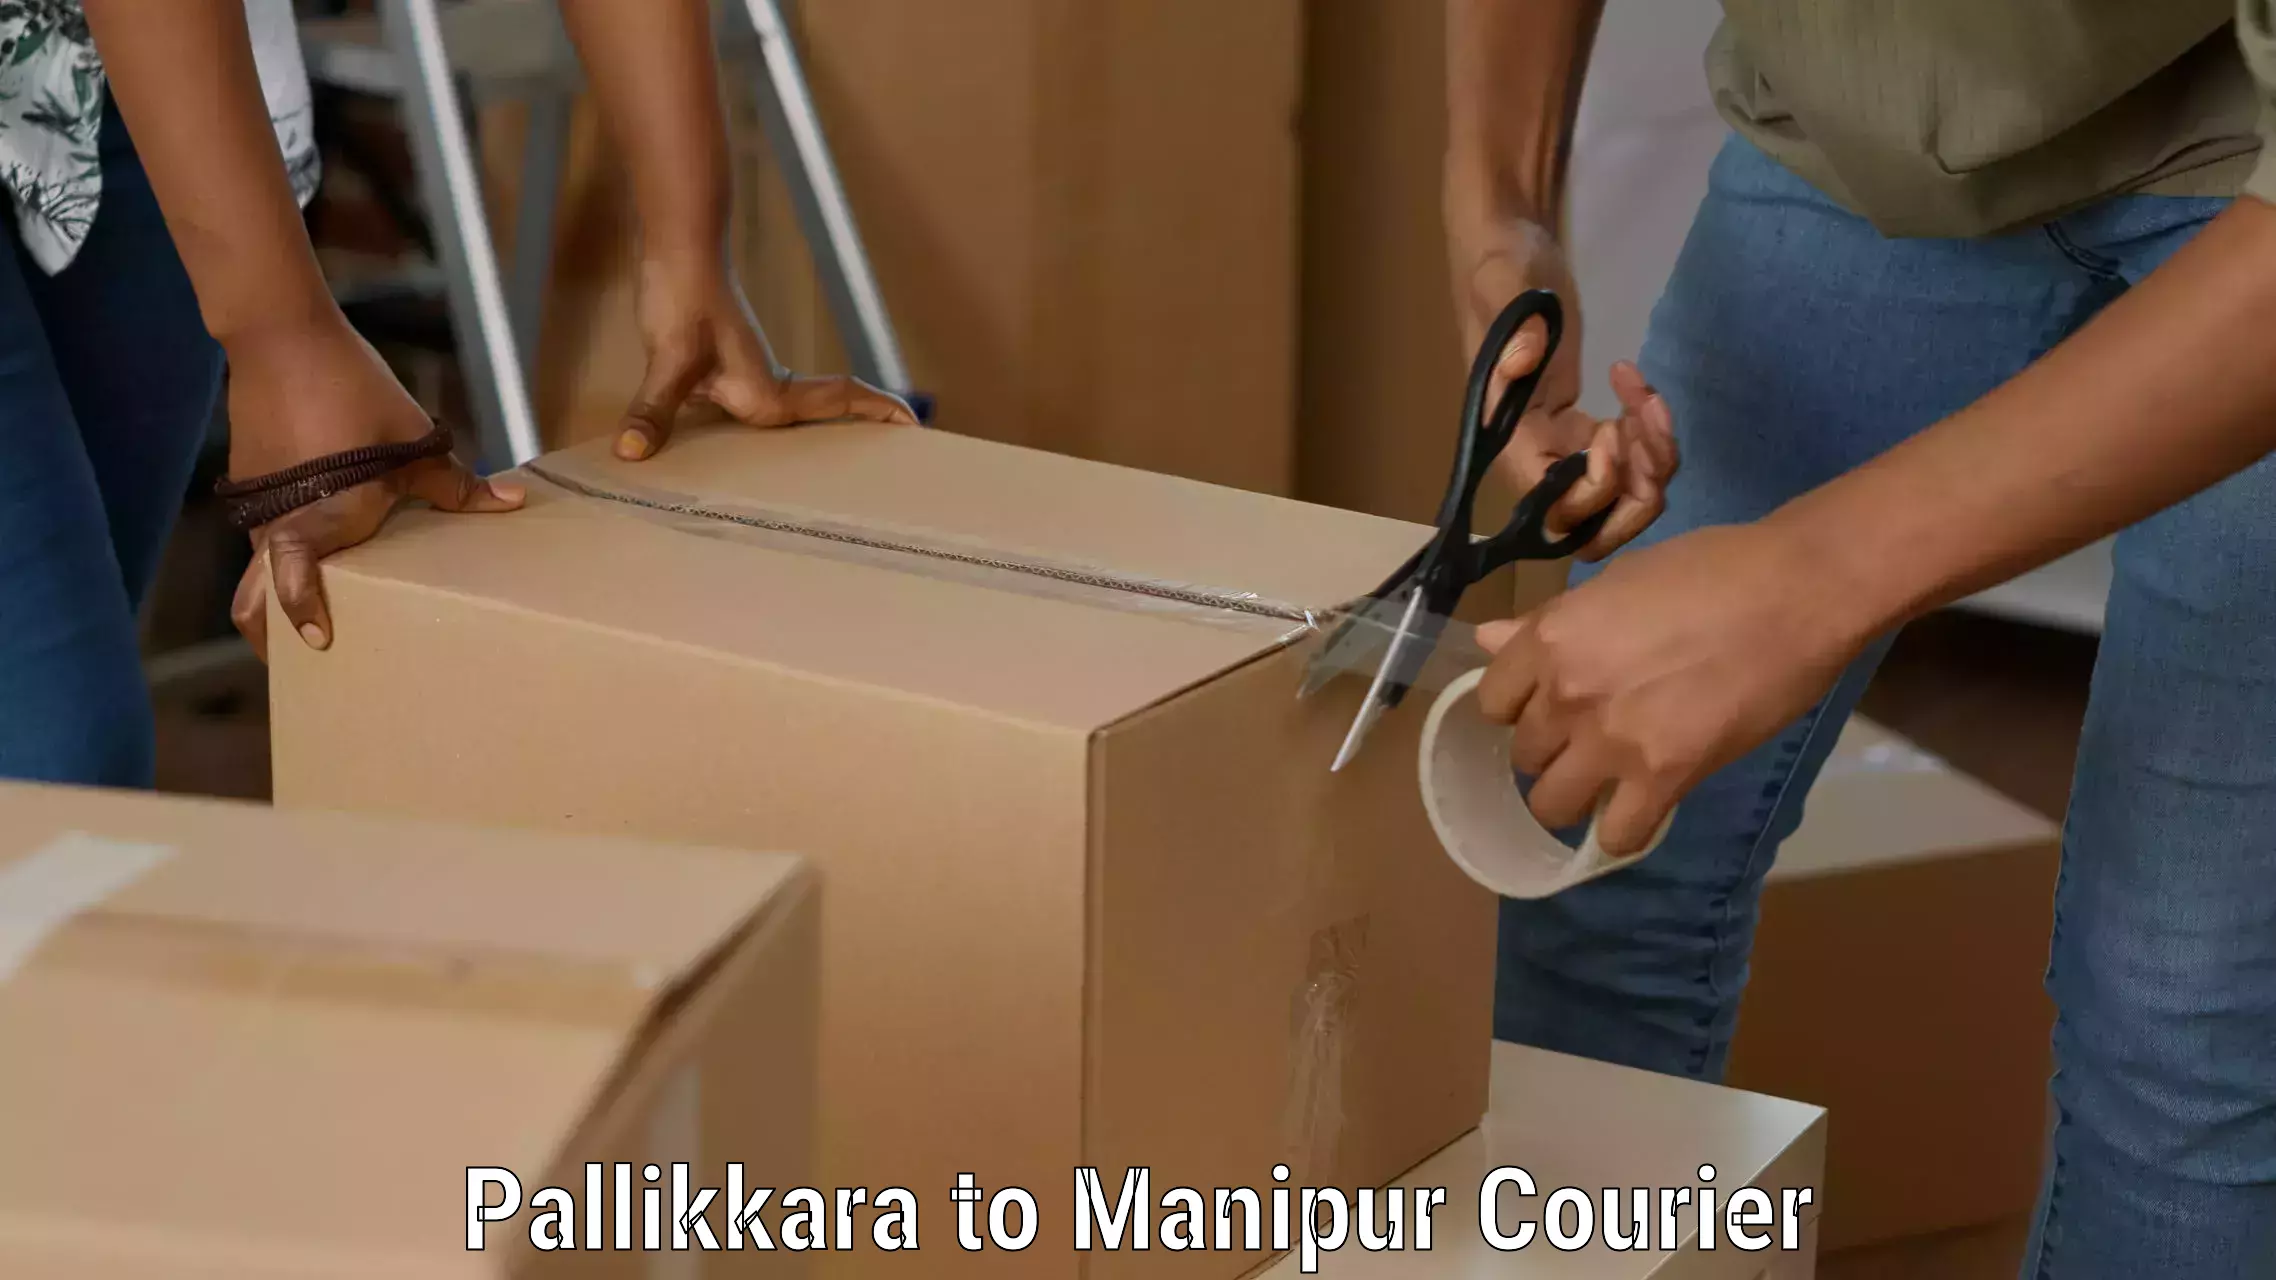 Express logistics service Pallikkara to Imphal